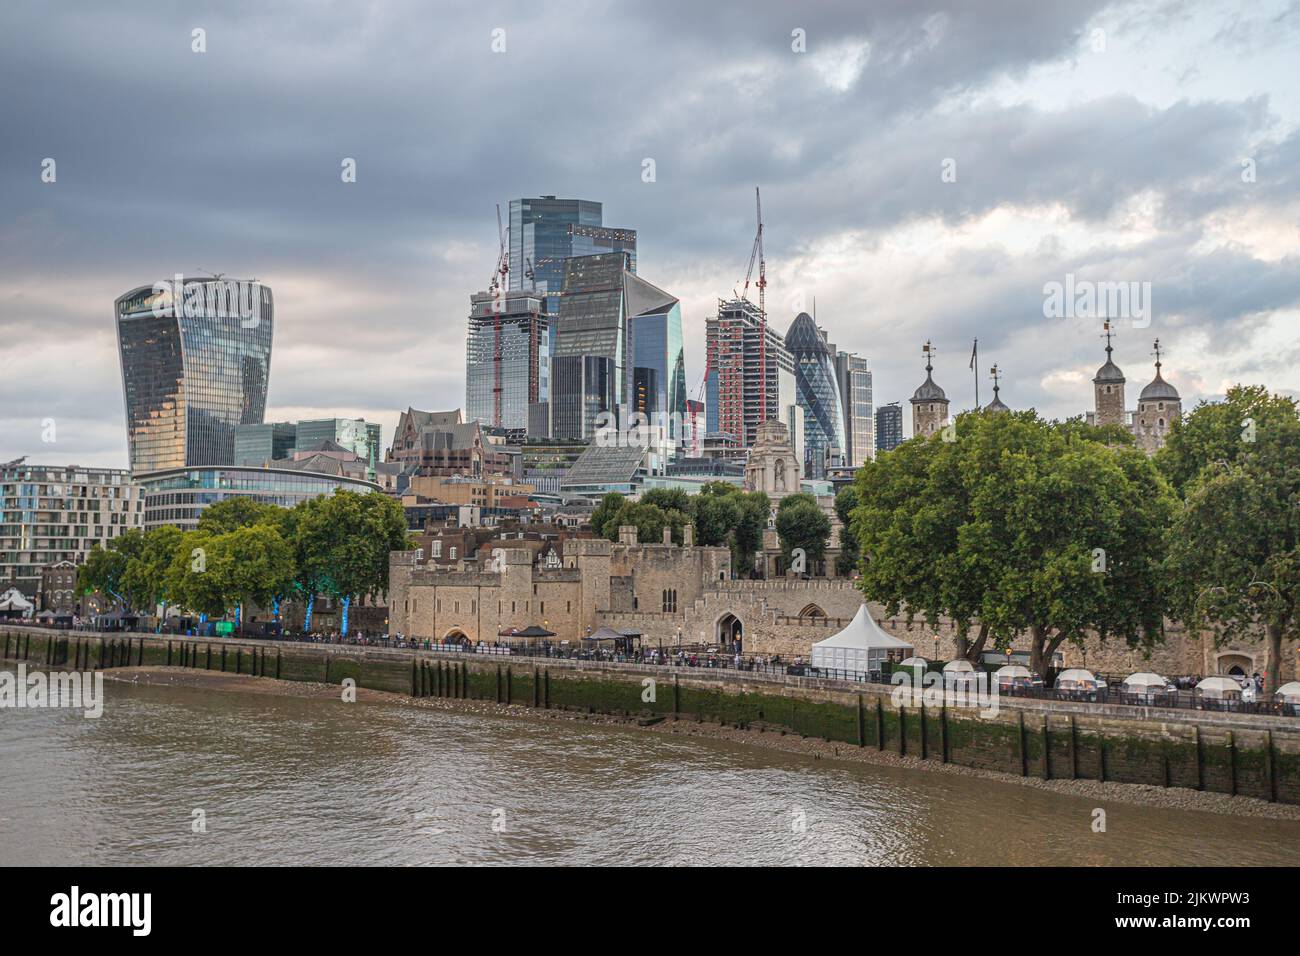 Les gratte-ciels toujours plus nombreux dans le quartier Square Mile de la tour de Londres de la Tour de Londres sur la rive de la Tamise vu en juillet 2022. Banque D'Images